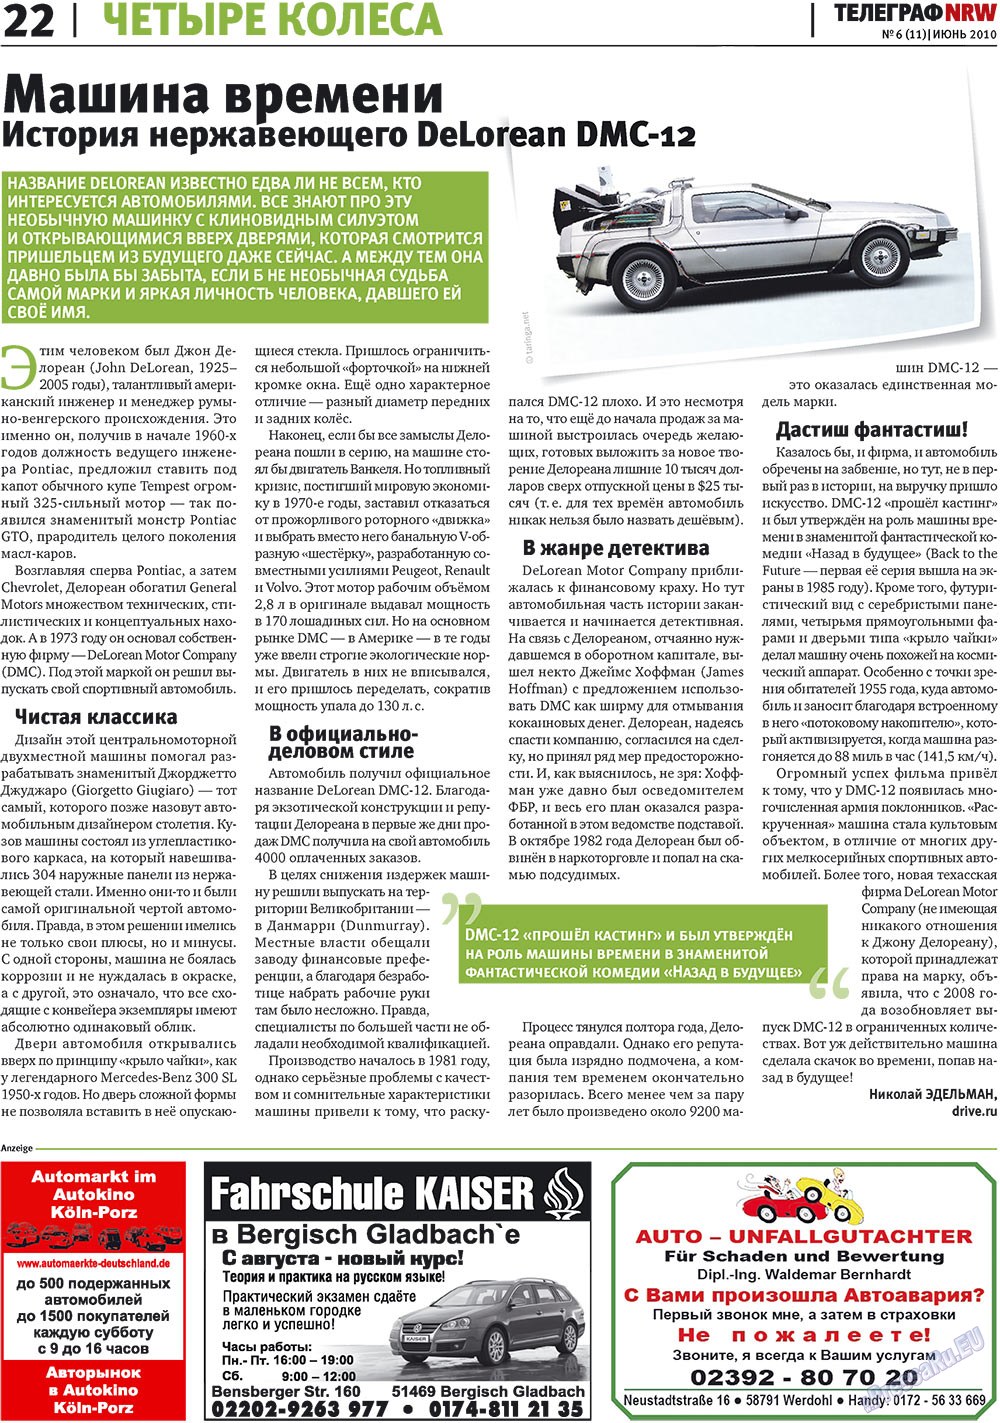 Телеграф NRW (газета). 2010 год, номер 6, стр. 22